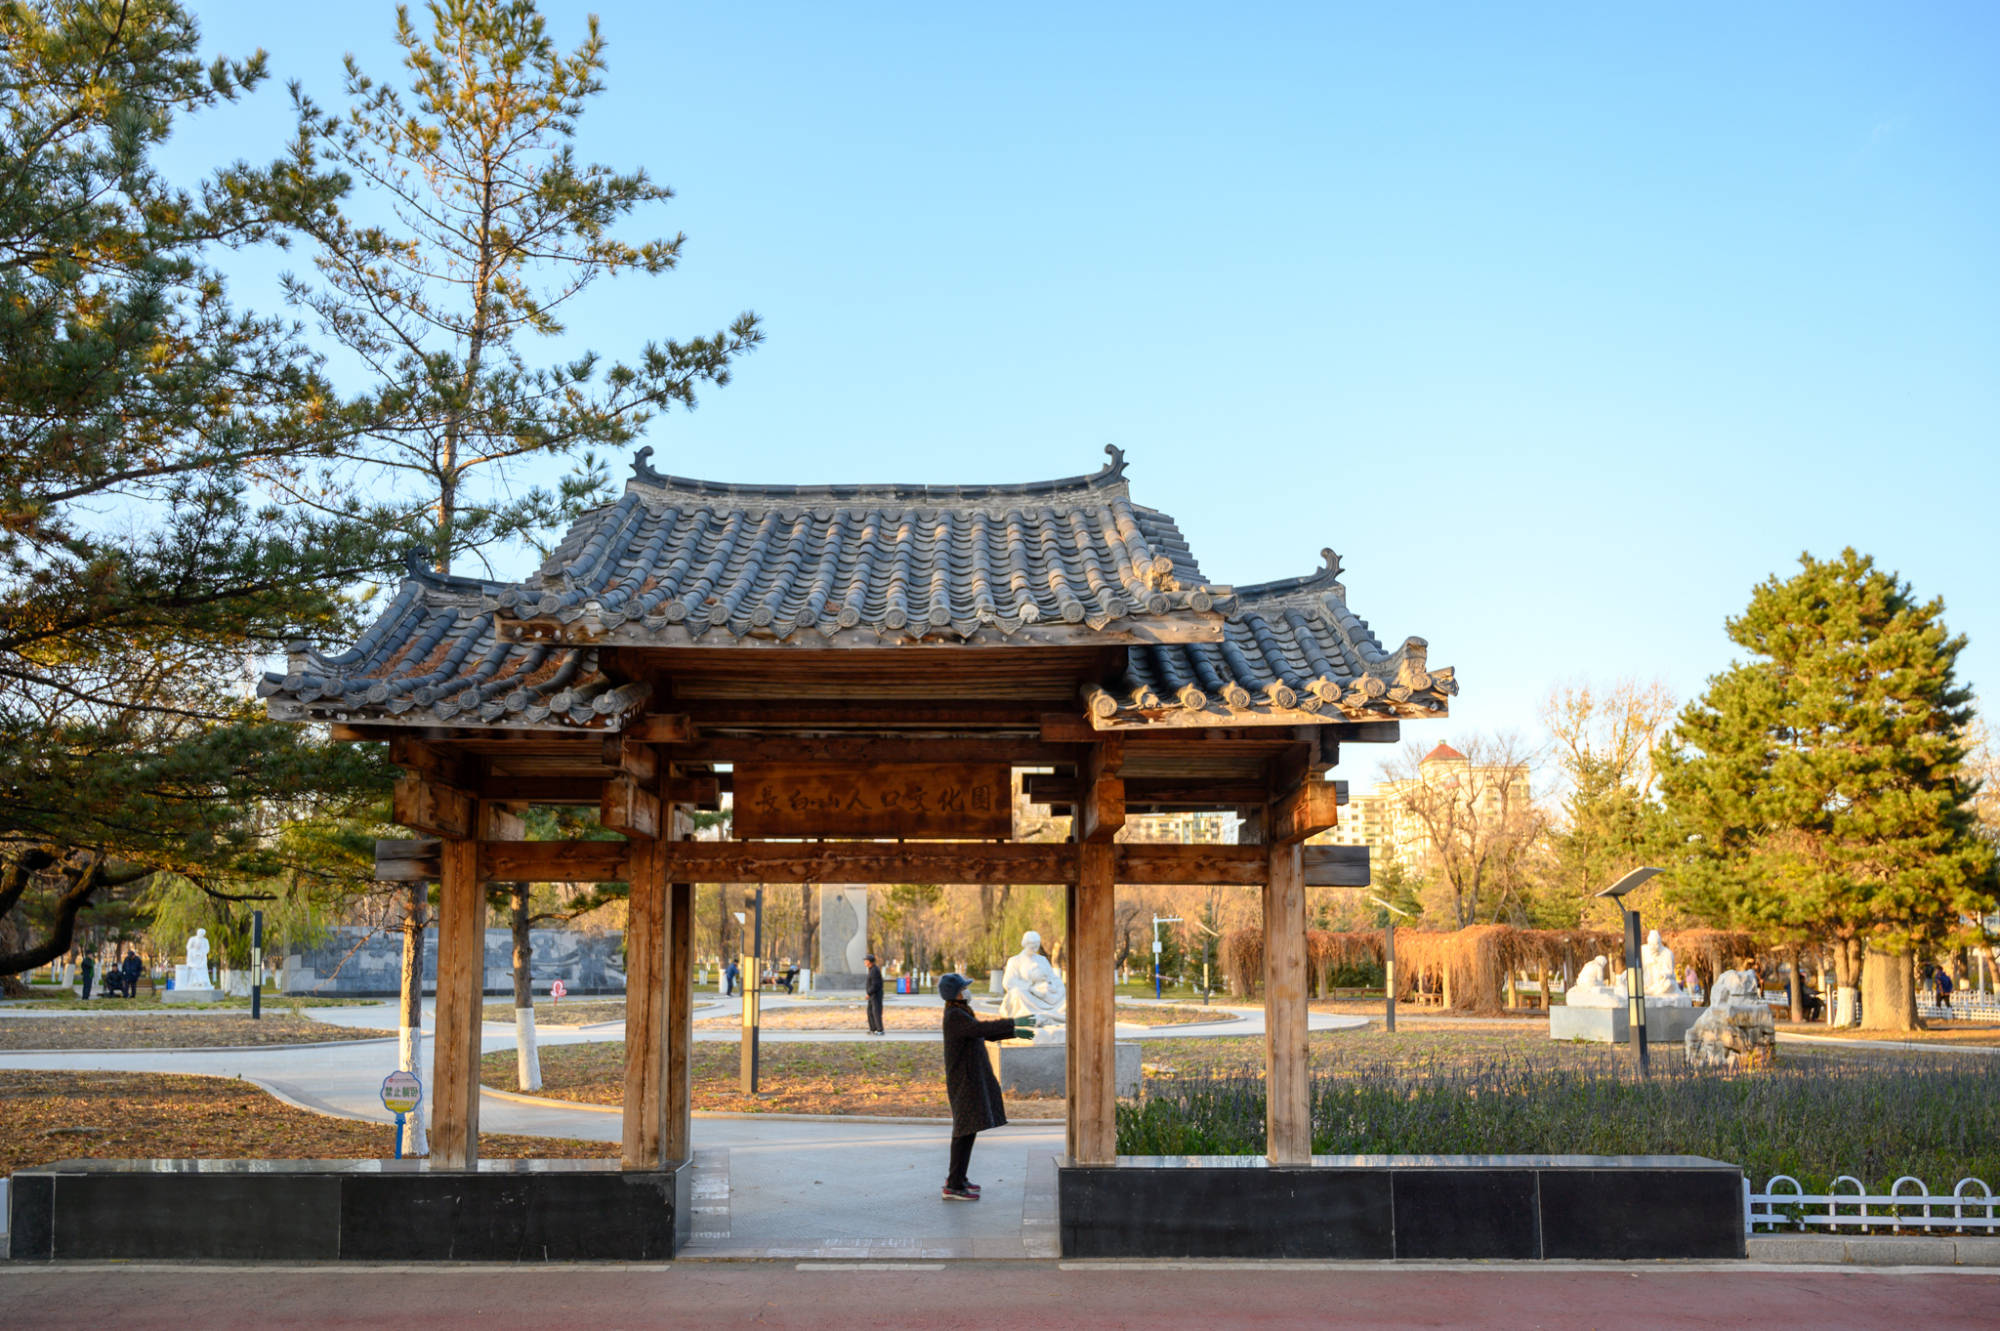 吉林延吉有一座百年公园 是当地最受欢迎的公园 门票免费 旅景网